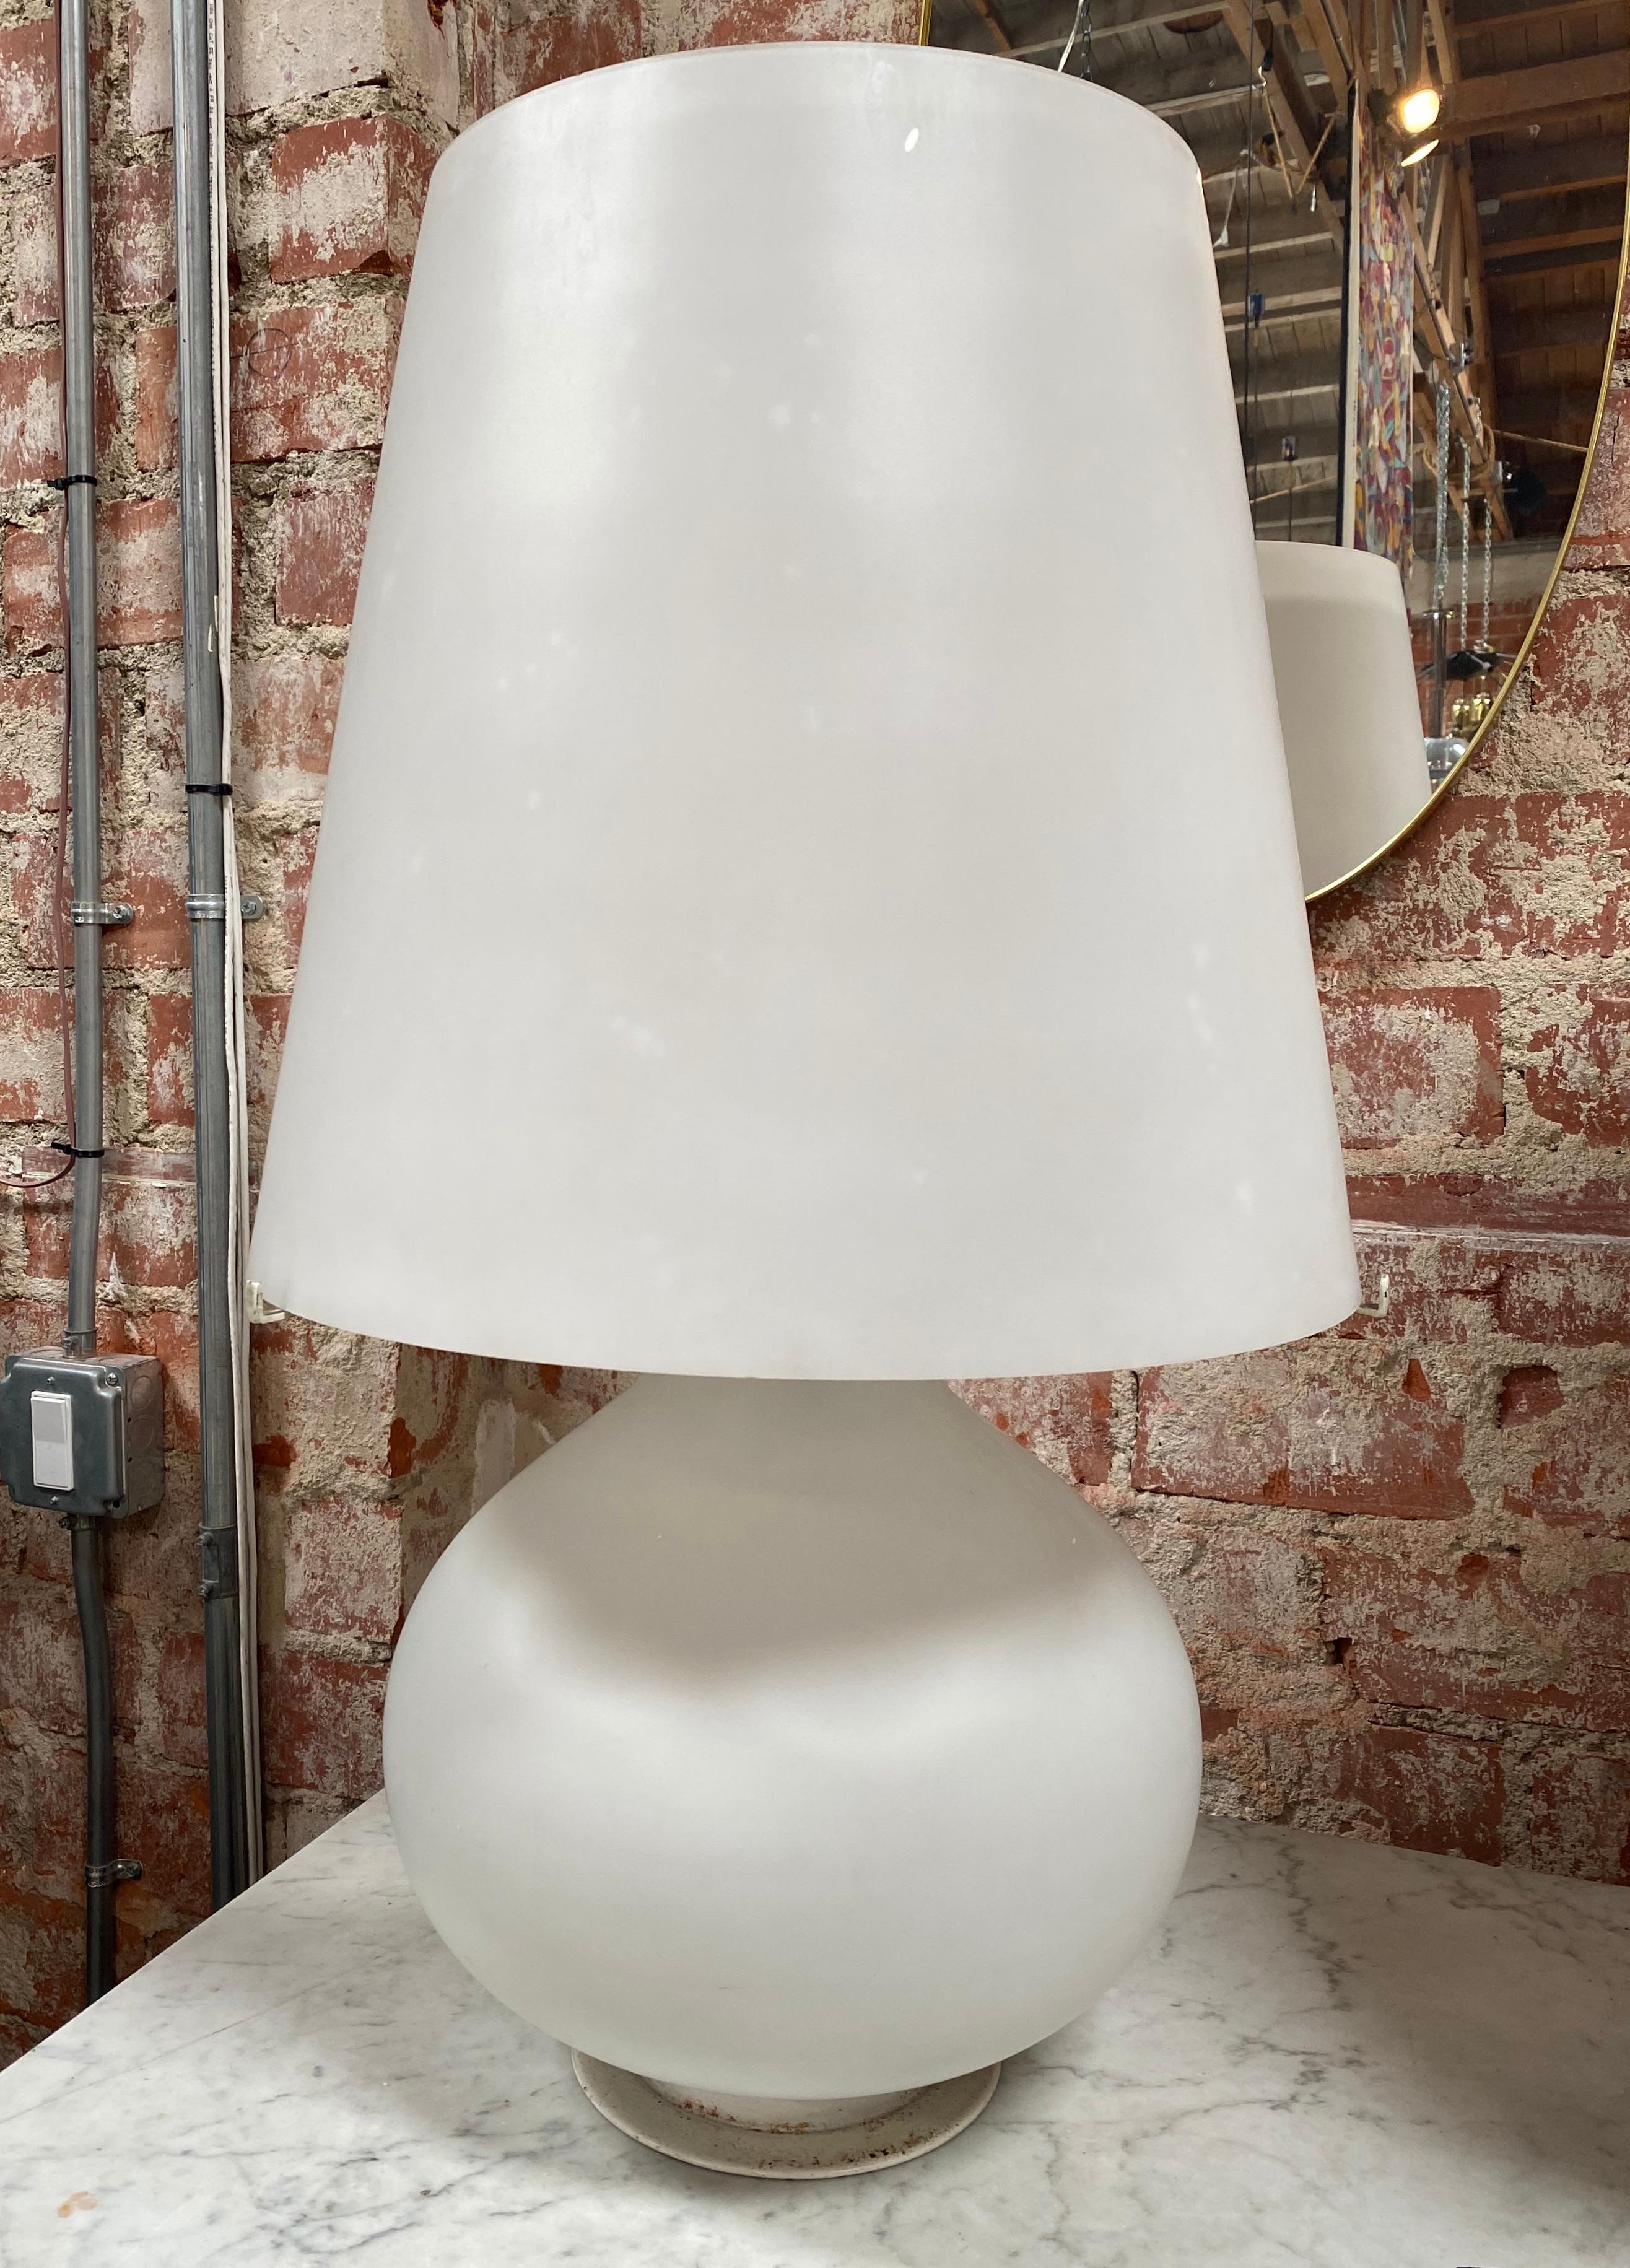 Merveilleuse et énorme lampe de table Fontana Arte, conçue en 1954 par Max Ingrand et fabriquée au début des années 1960 en Italie.
La plus grande des trois tailles existantes Les lampes de table 